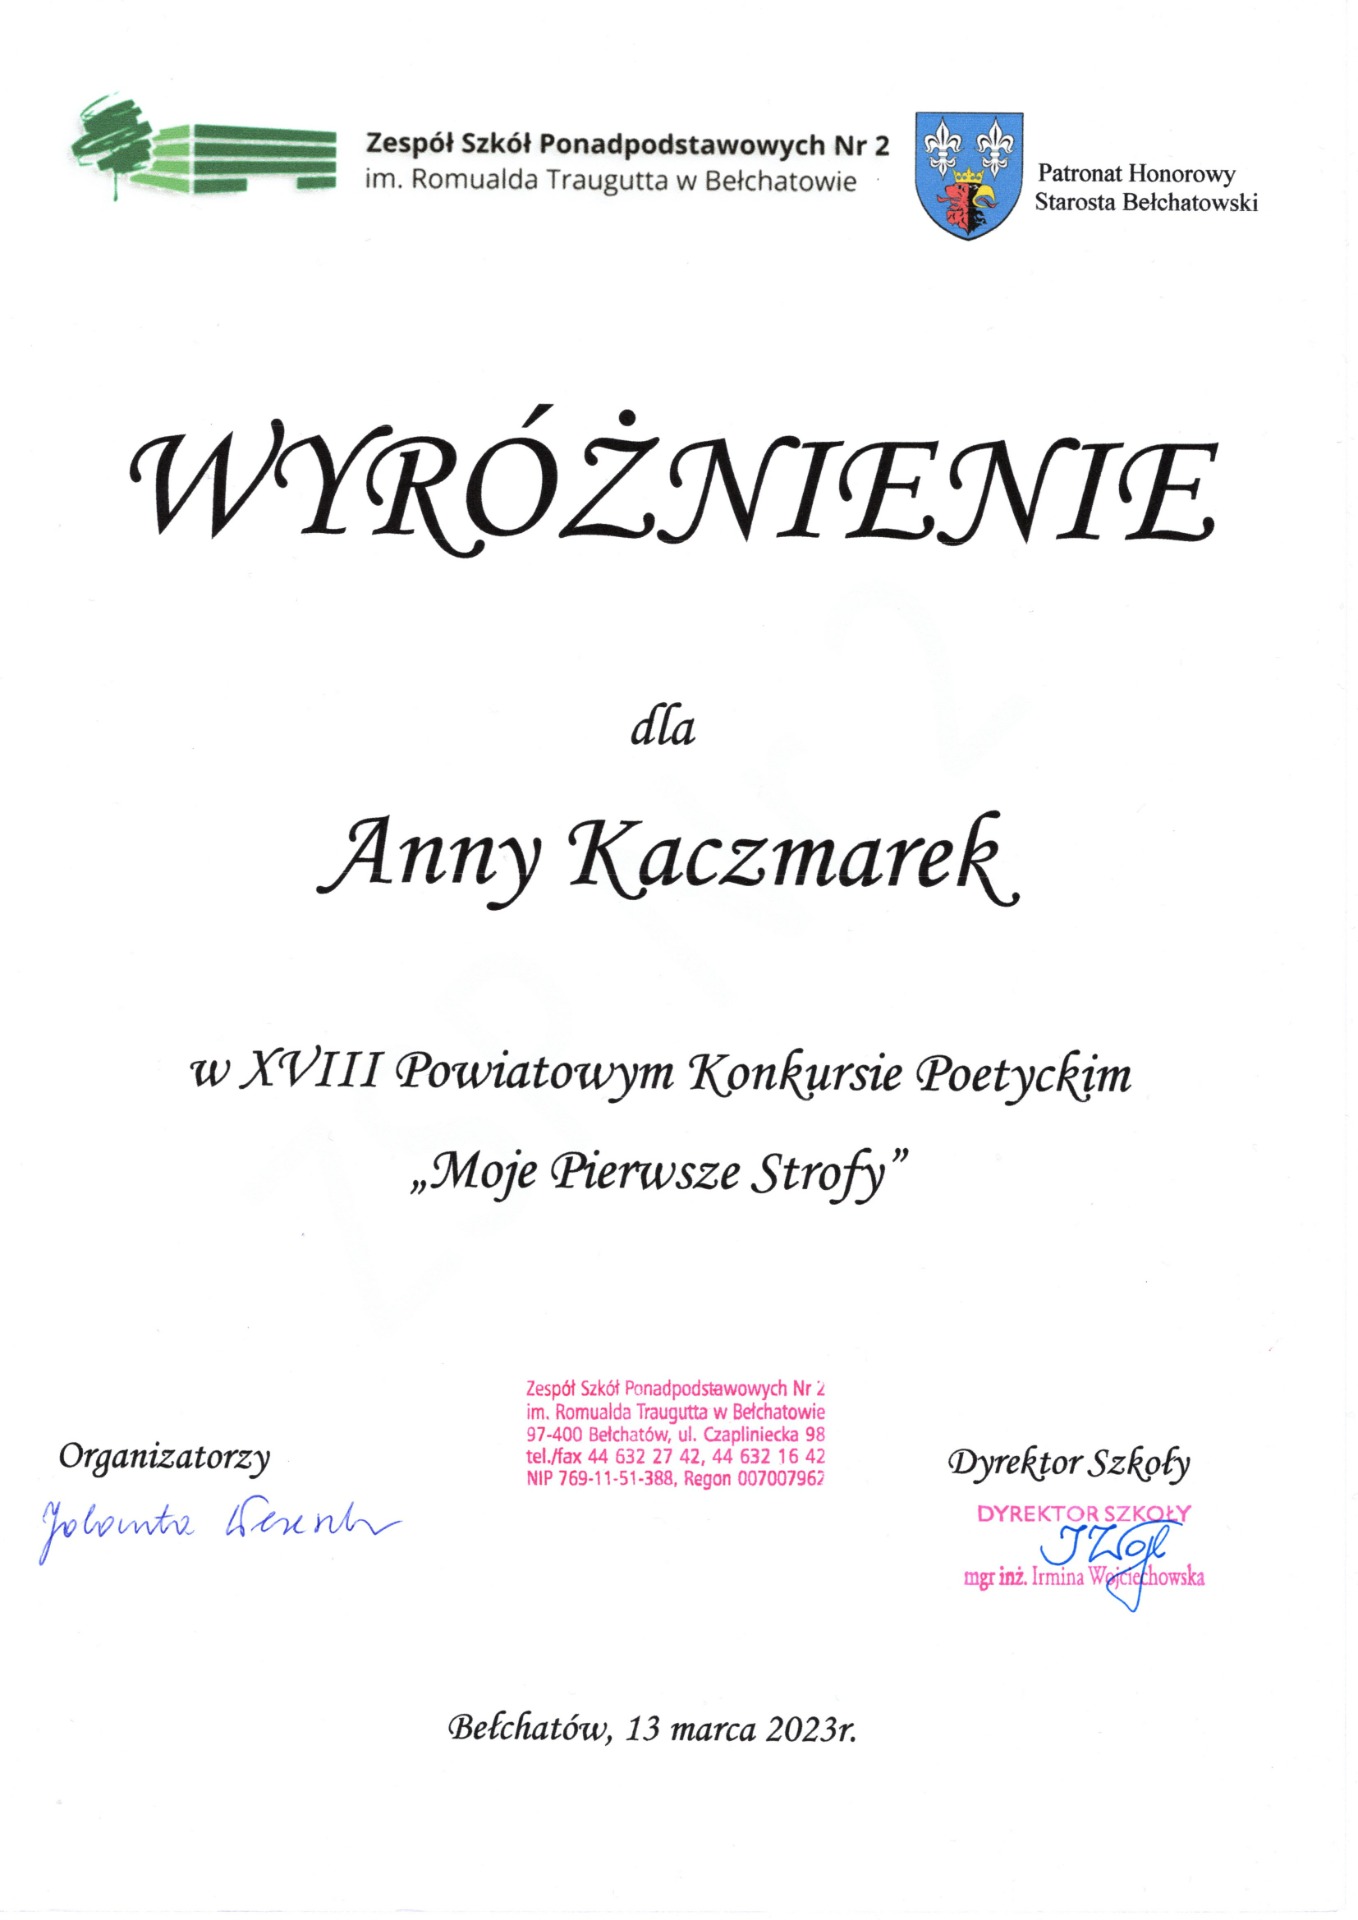 Wyróżnienie dla Anny Kaczmarek w XVIII Powiatowym Konkursie Poetyckim "Moje pierwsze strofy"